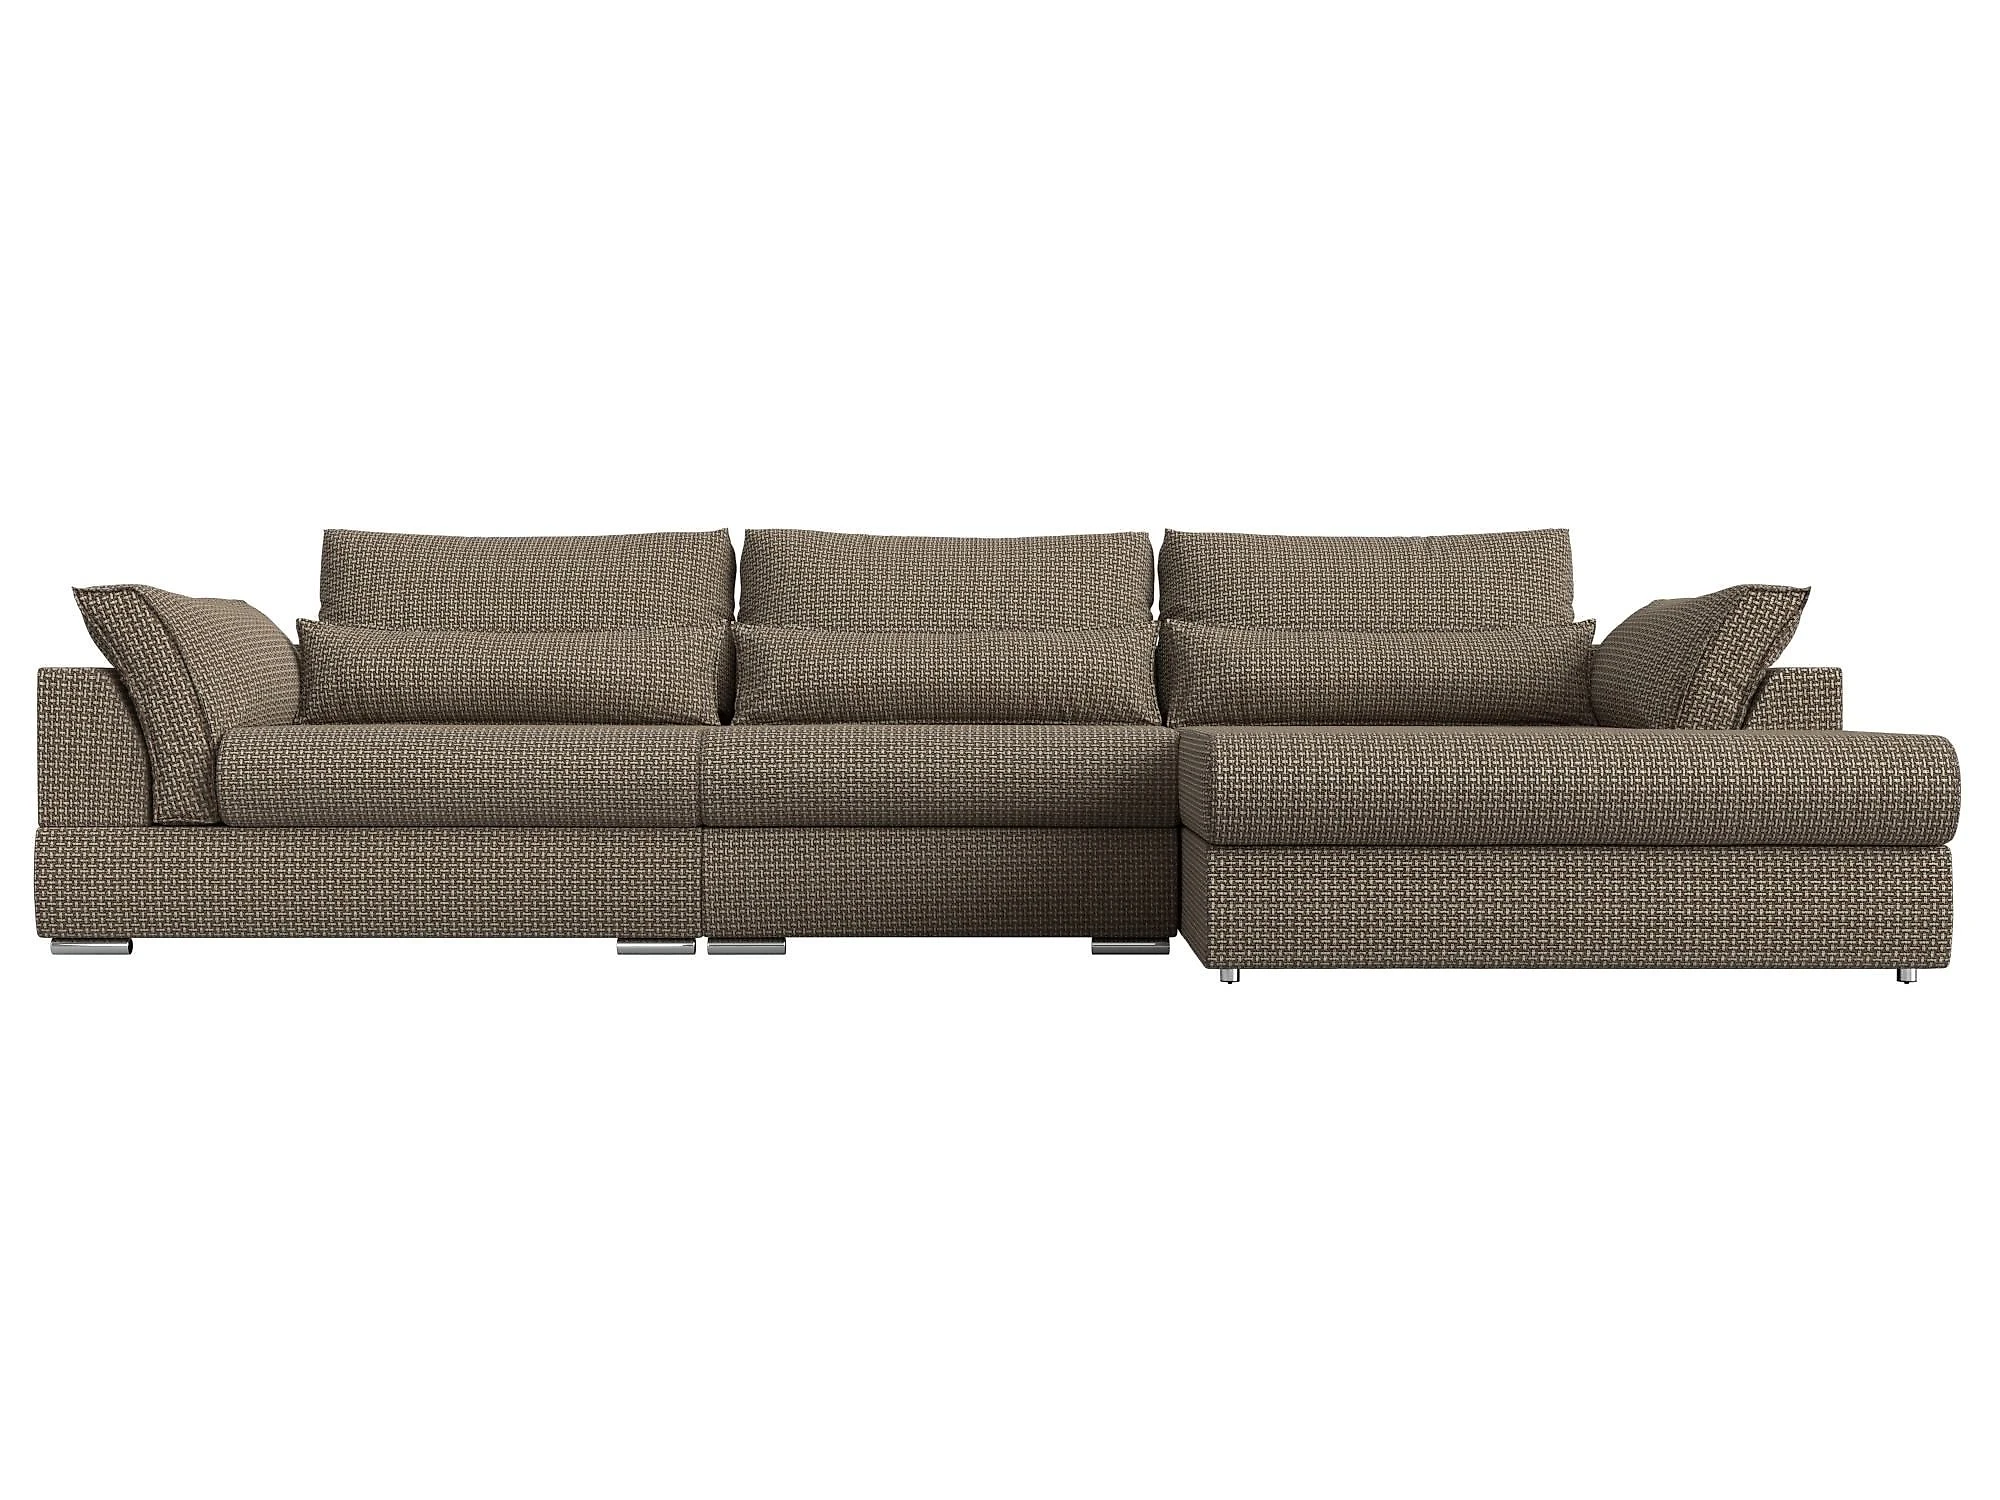  угловой диван из рогожки Пекин Лонг Дизайн 11